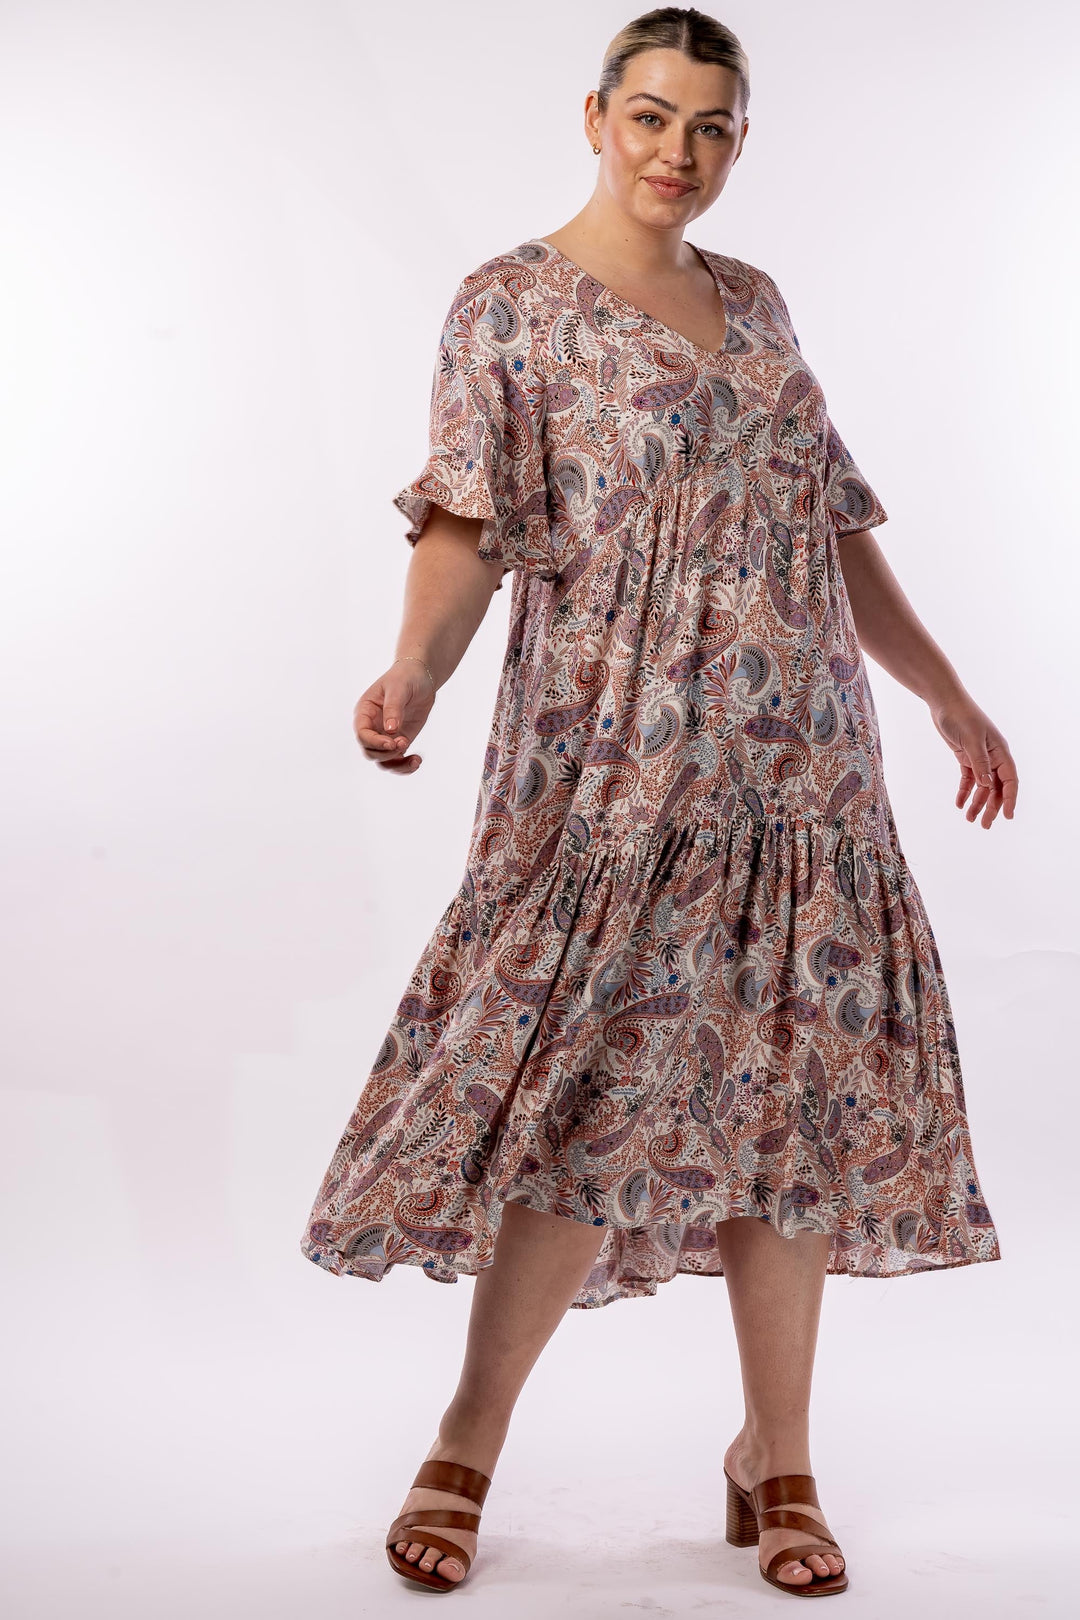 Babooshka Maxi Dress - Paisley - STOCK AVAILABLE - SIZE XS (12/14) and S (14/16)